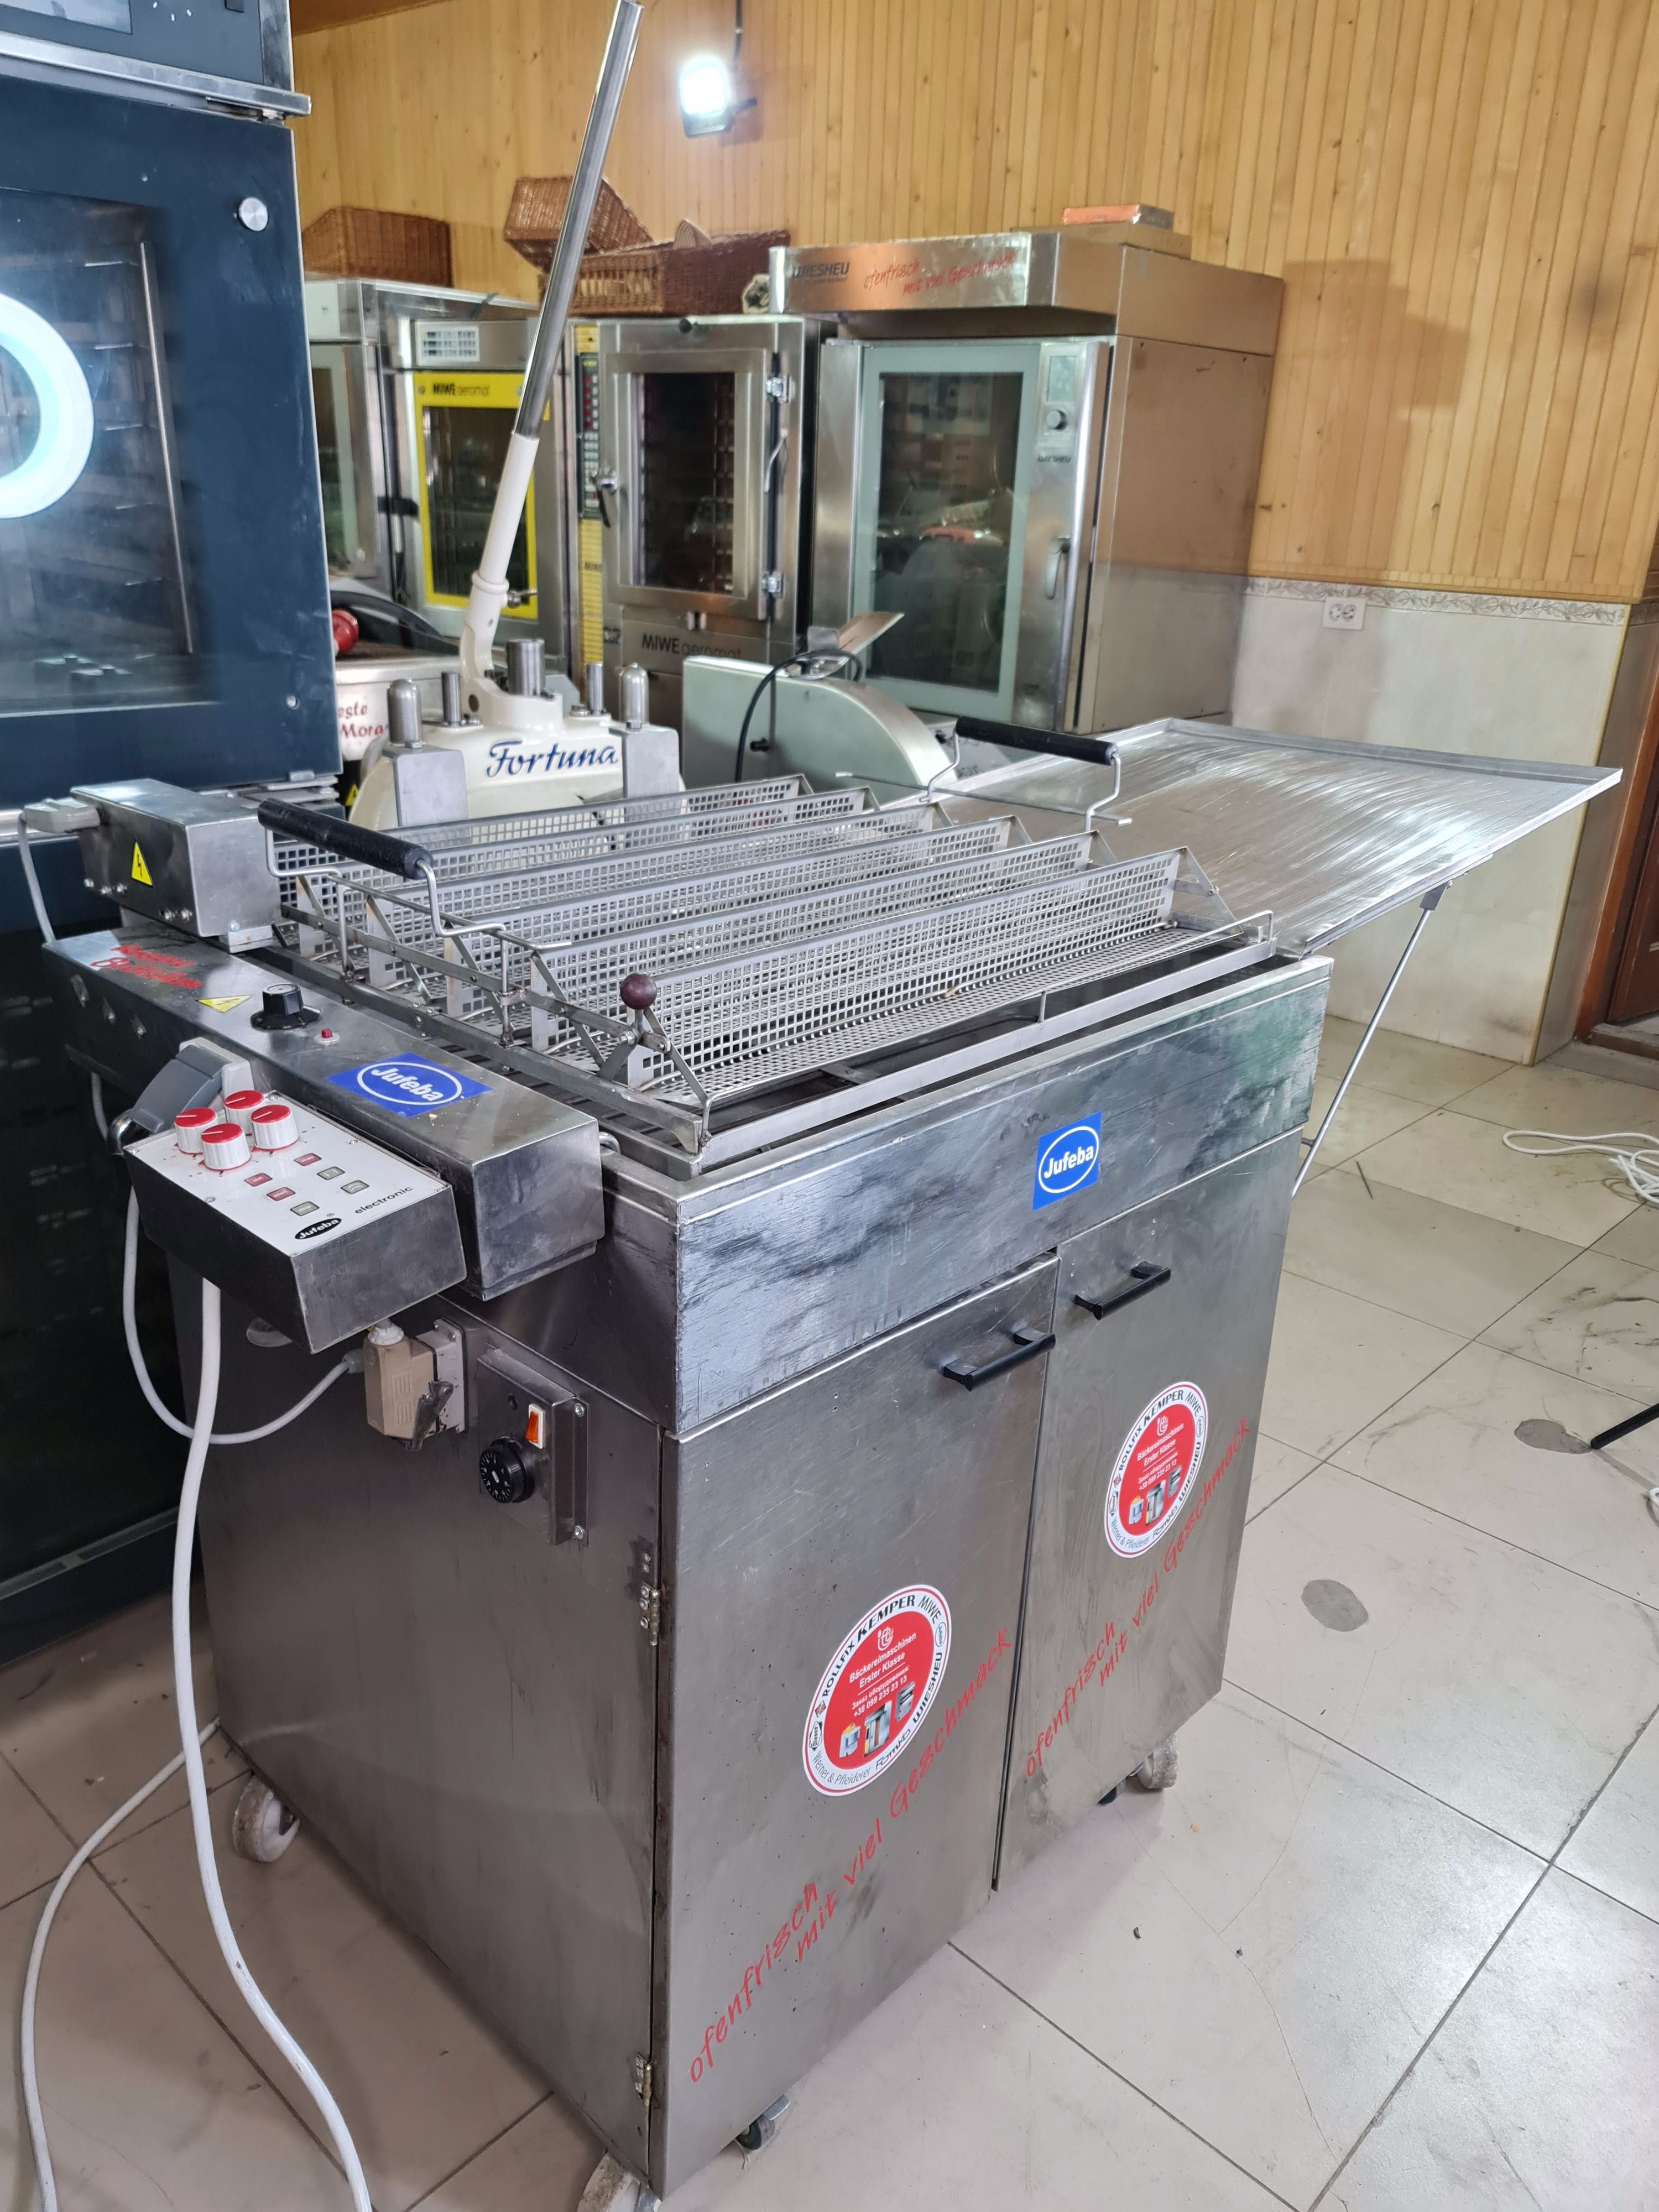 Фритюрница жаровня Jufeba Автомат для берлинеров с растойкой